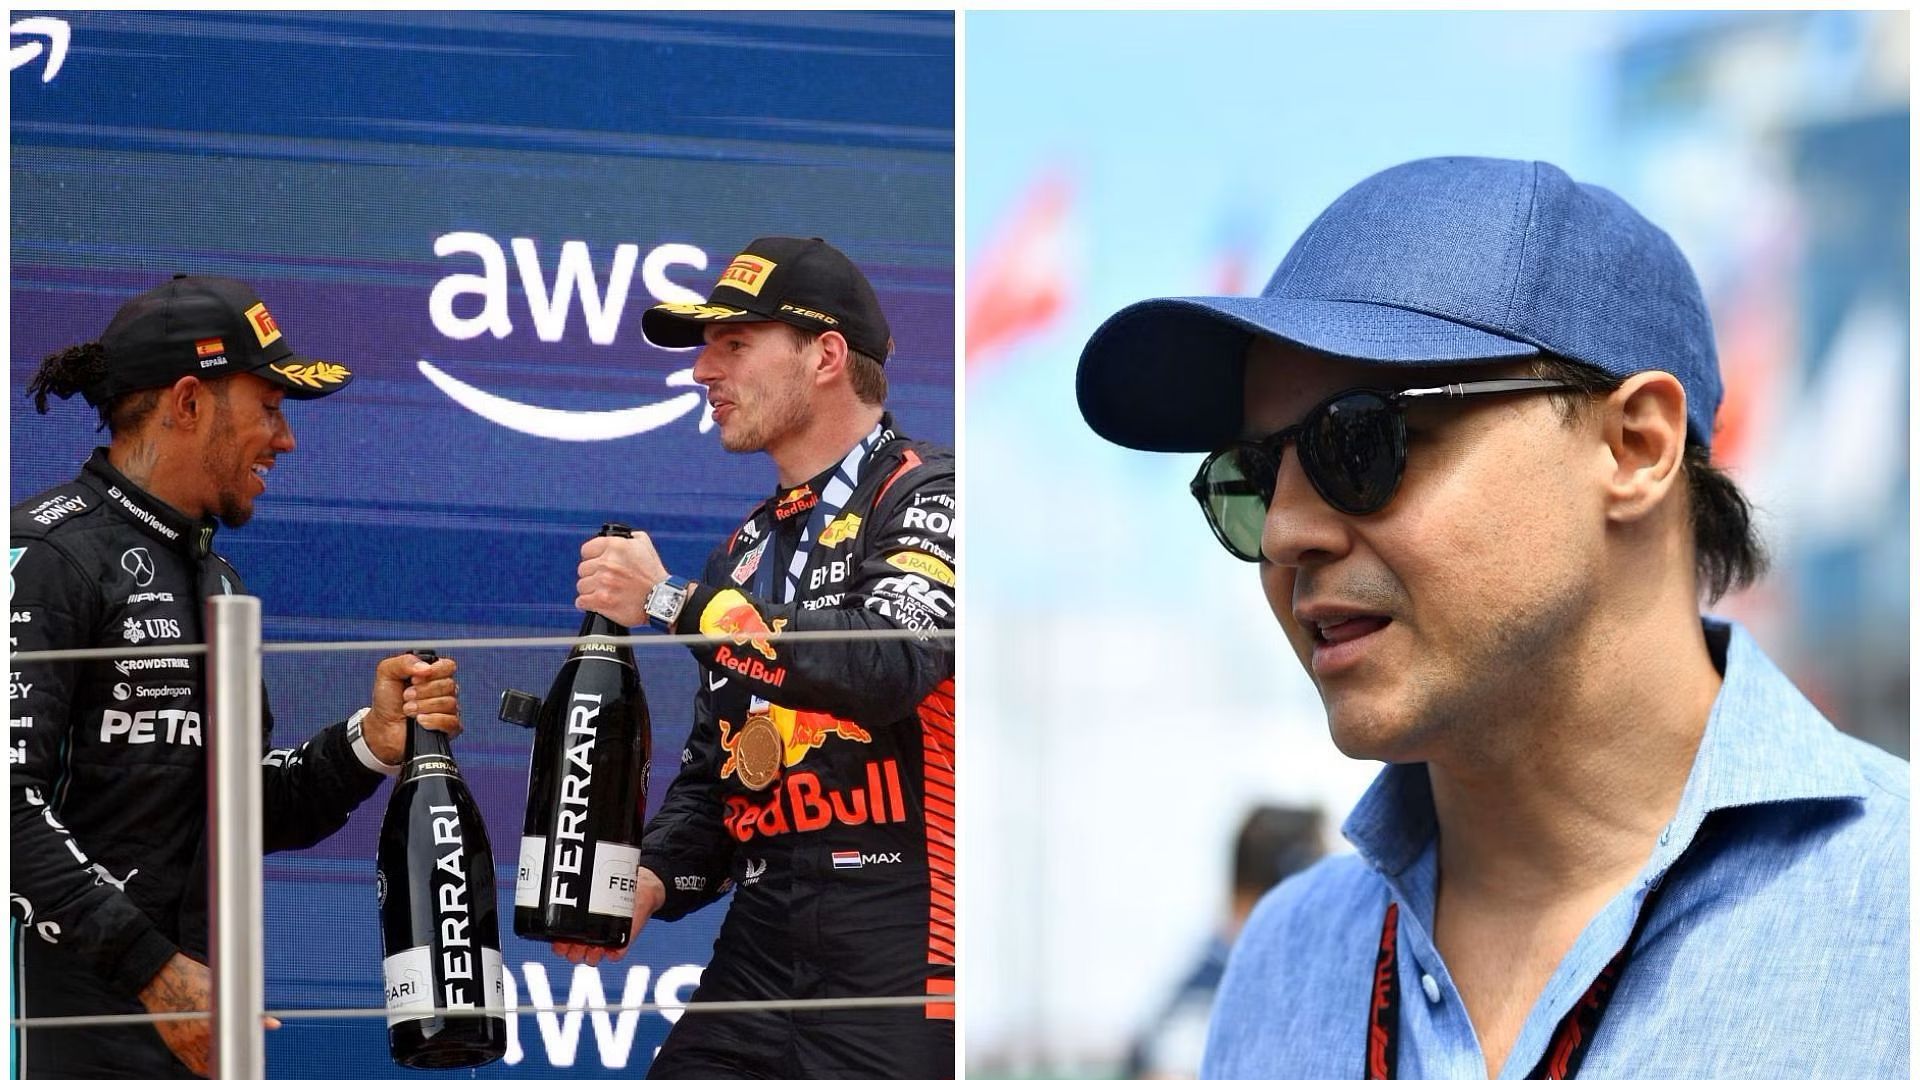 «Судебное дело Фелипе Массы может привести к тому, что Льюис Хэмилтон оспорит титул чемпиона Формулы-1 Макса Ферстаппена в 2021 году», — считает бывший гонщик